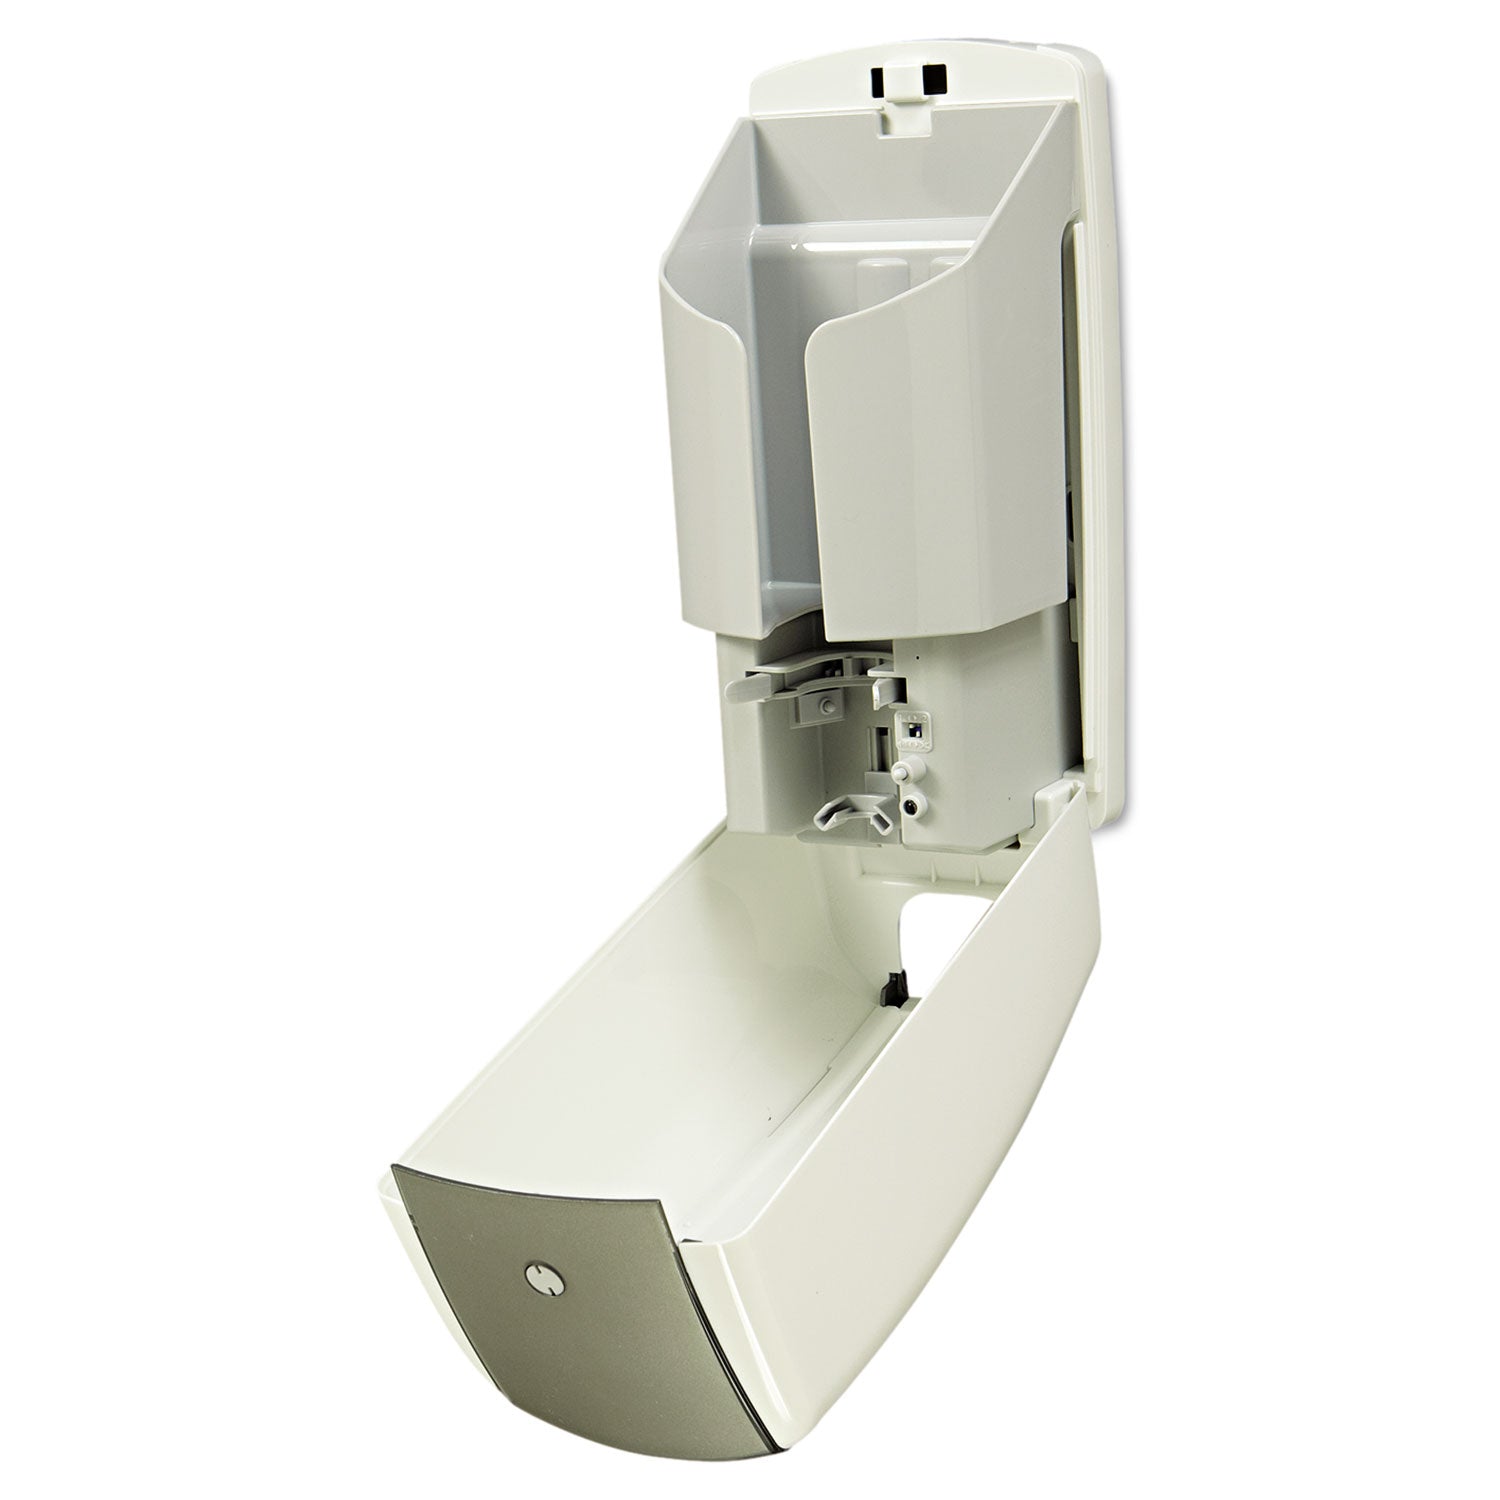 autofoam-touch-free-dispenser-1100-ml-52-x-525-x-109-white-gray-pearl_rcp750140 - 2